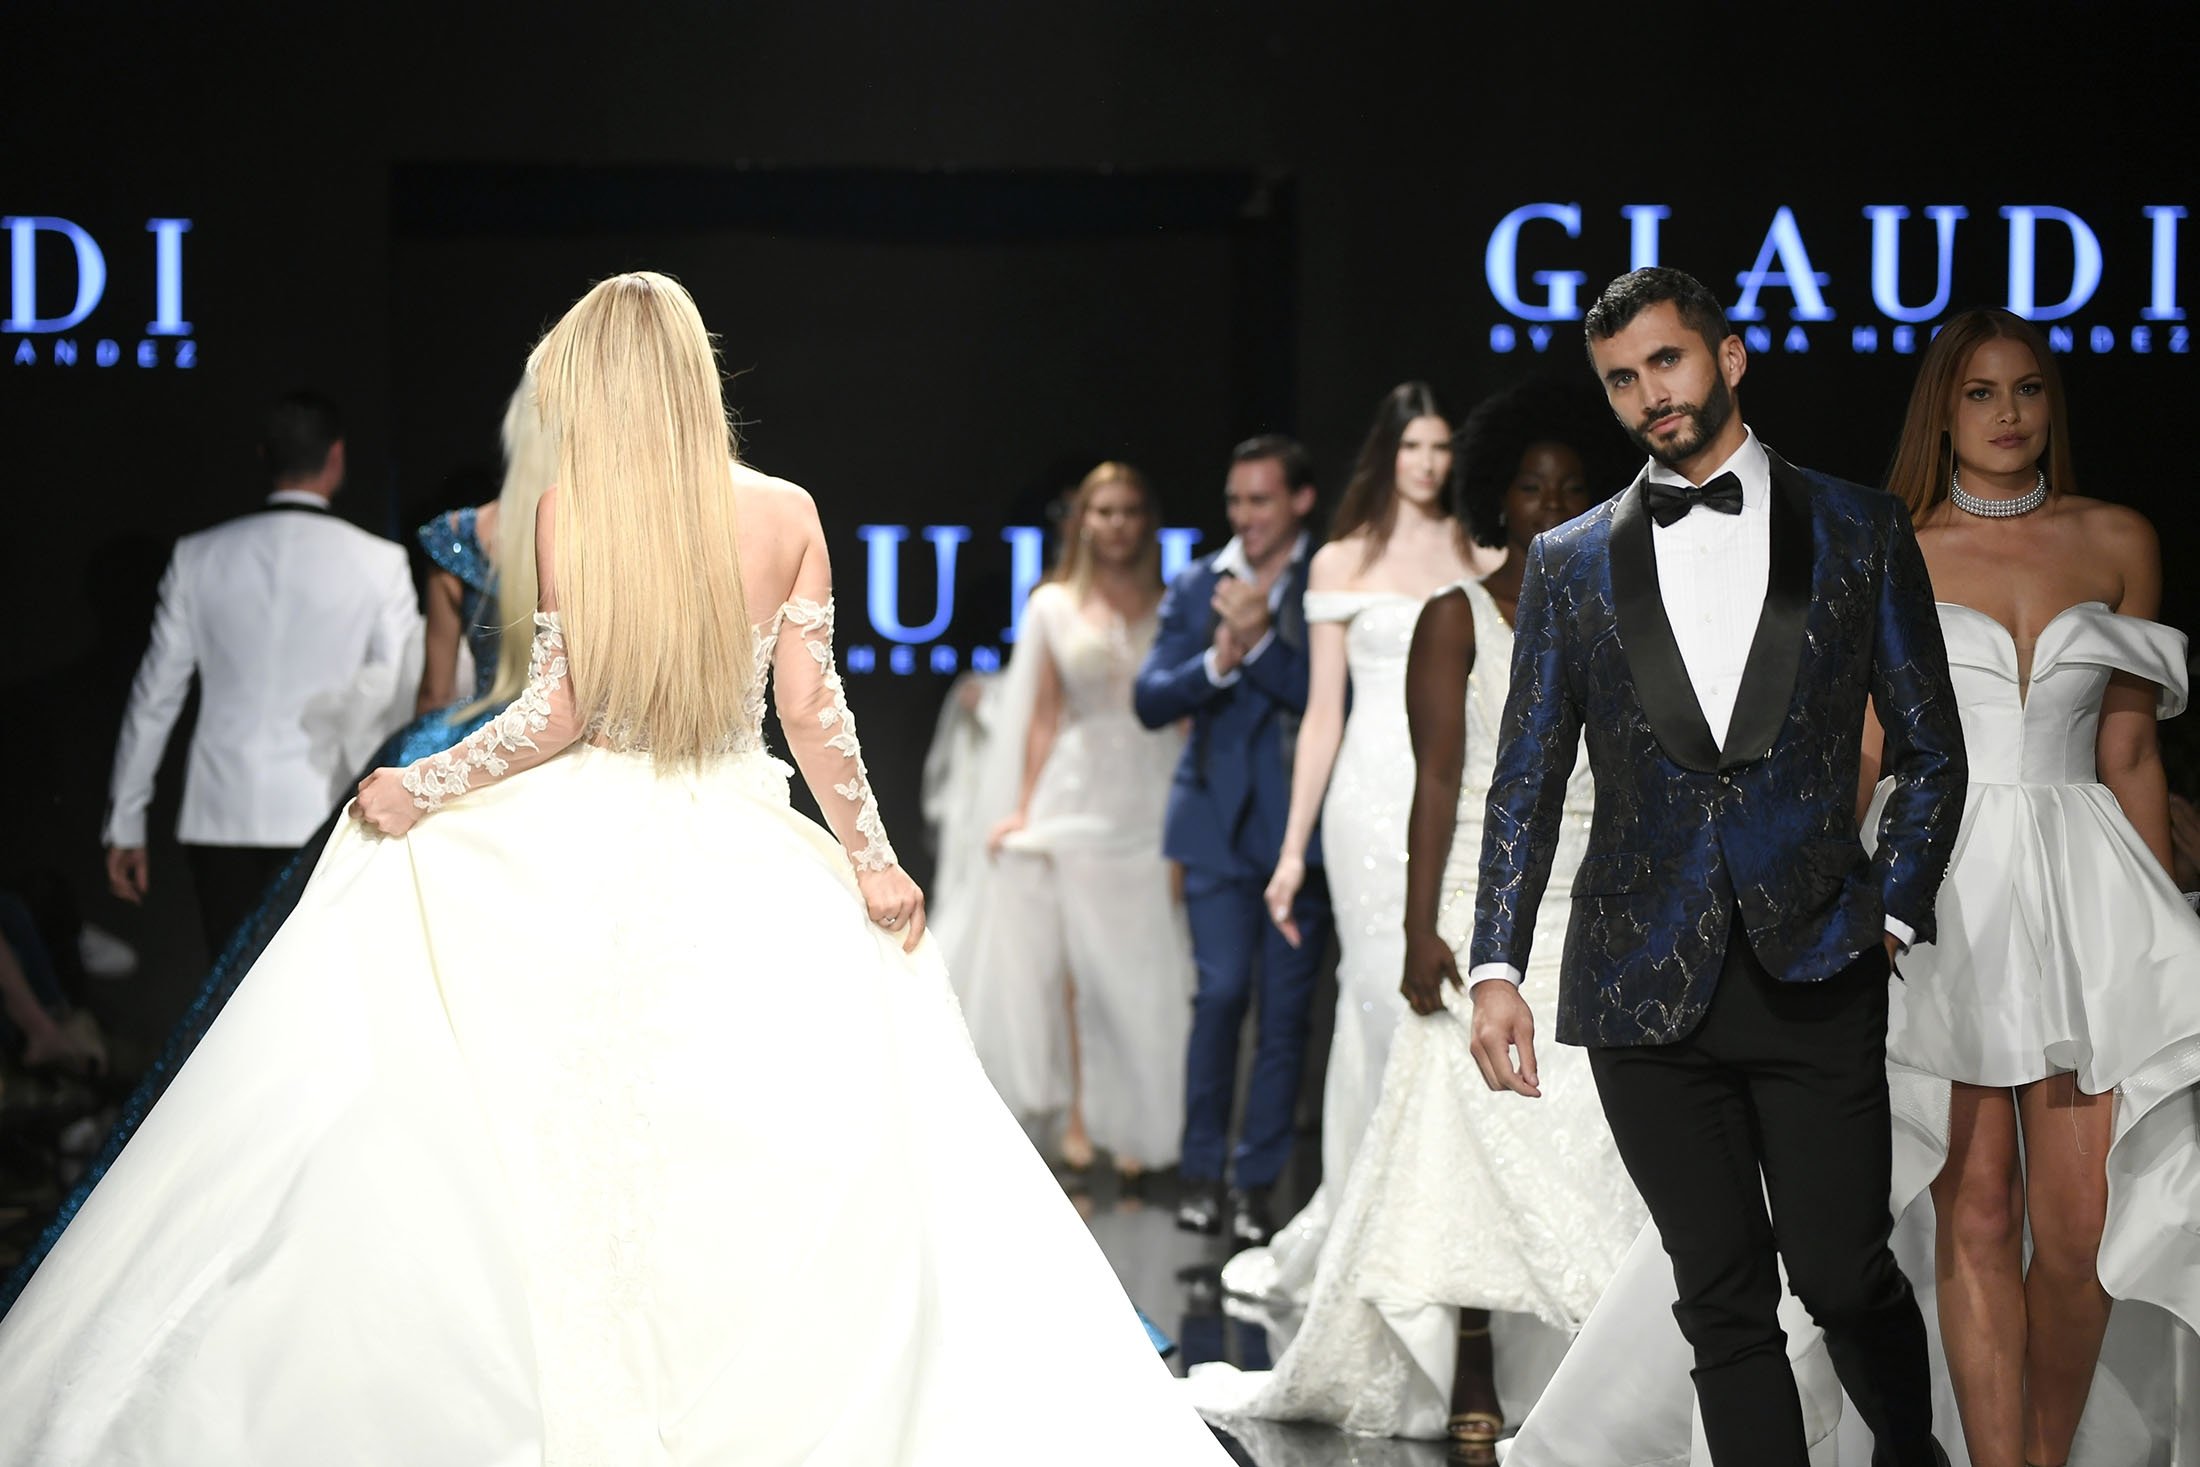 Glamor at Los Angeles Fashion Week 2021 | Daily Sabah